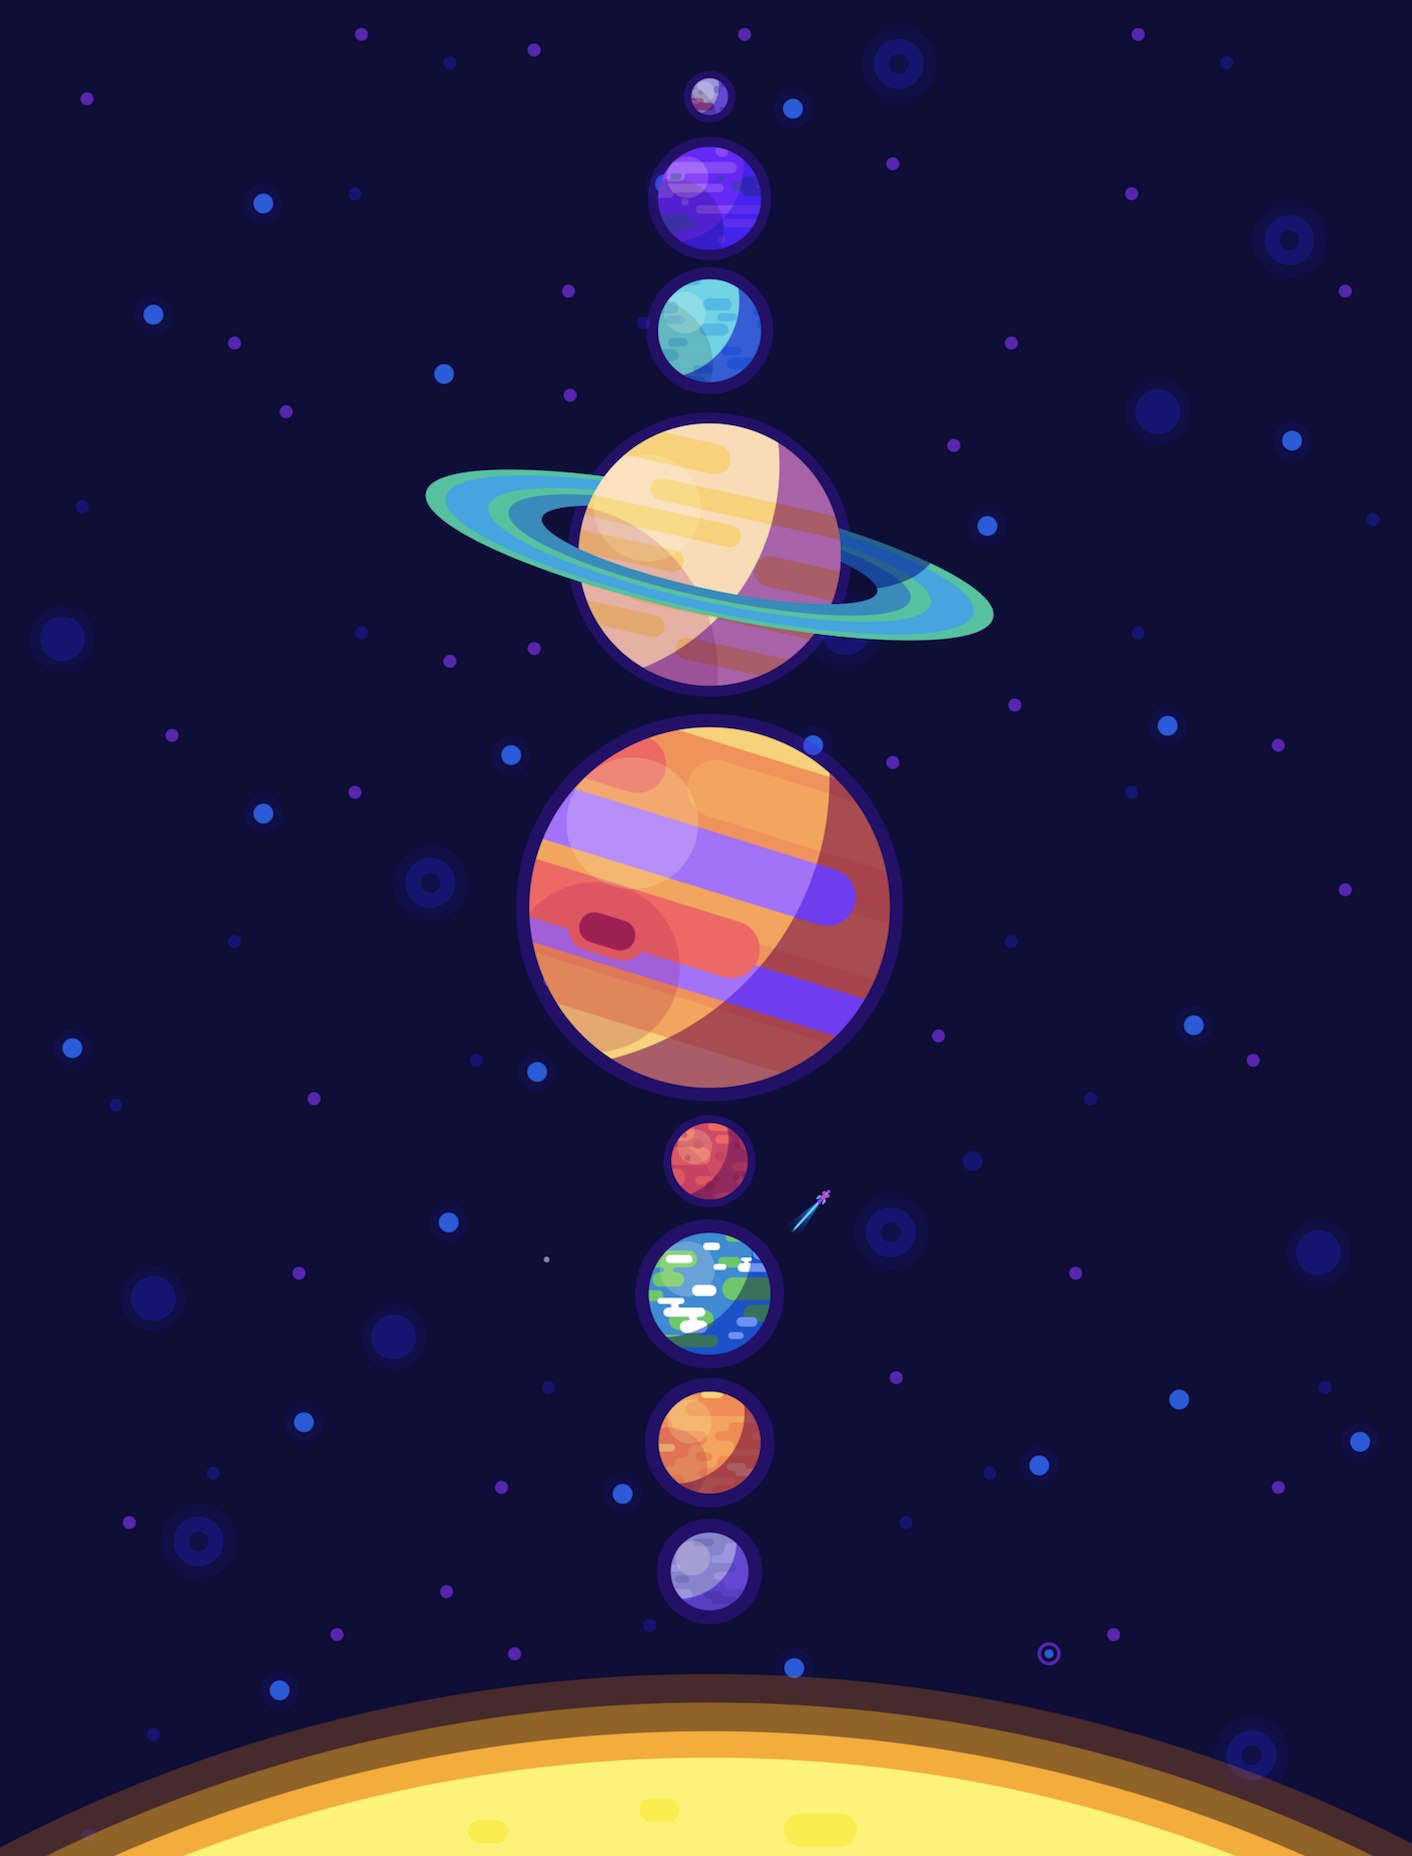 [wallpaper] Solar System Wallpaper For Phone/tablet - Kurzgesagt Solar System Poster , HD Wallpaper & Backgrounds